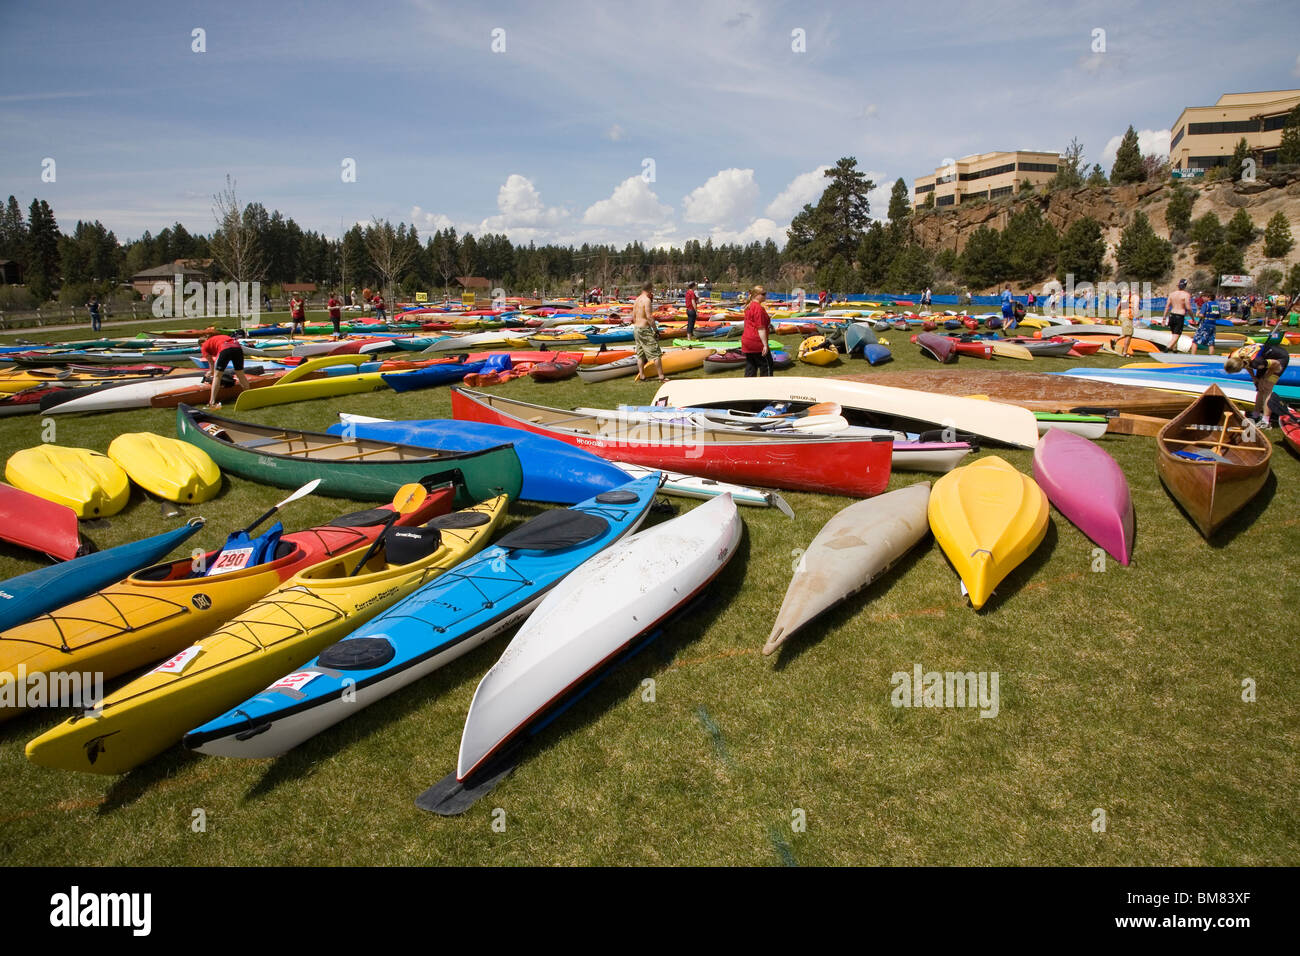 Le Pole-Pedal-Paddle événement sportif qui se déroule chaque année à Bend, Oregon, attire des milliers de tous les USA Banque D'Images